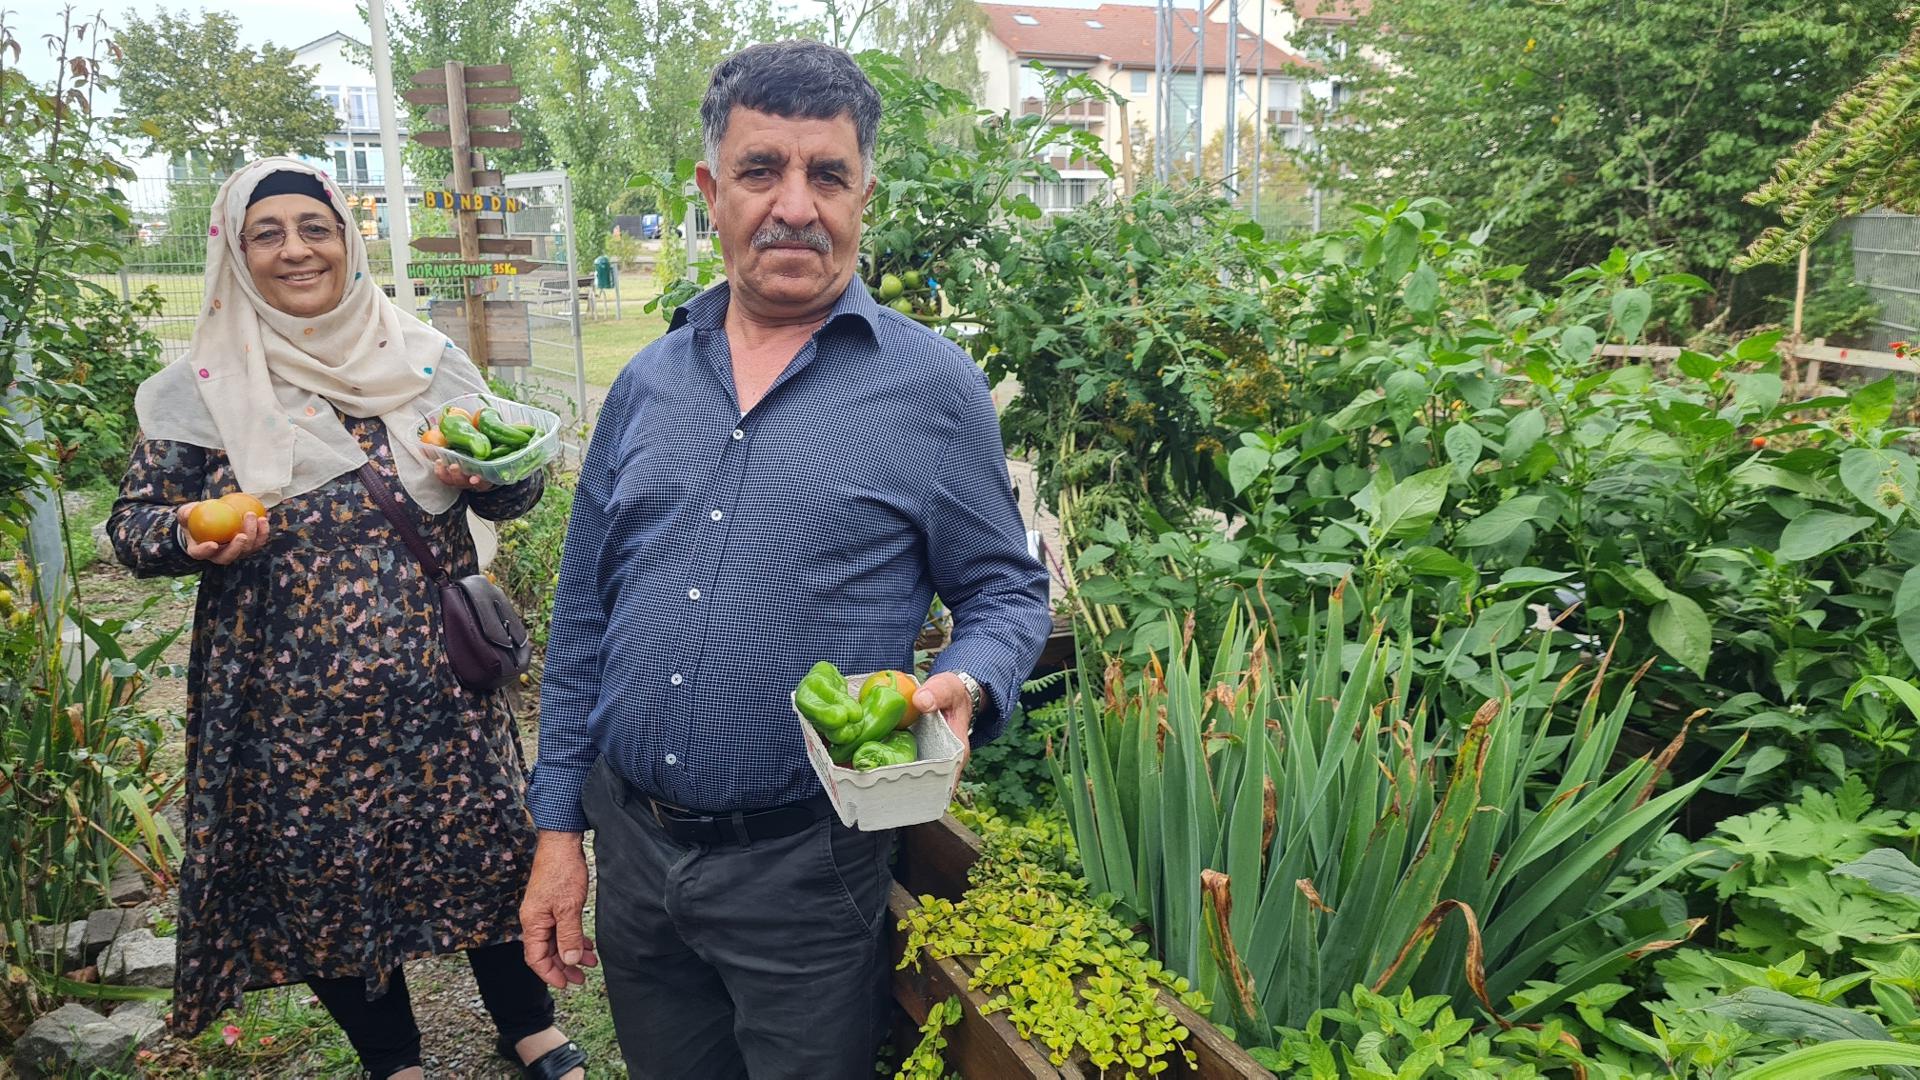 Eine Frau und ein Mann stehen in einem Garten und haben Gemüse geerntet in Körbchen.